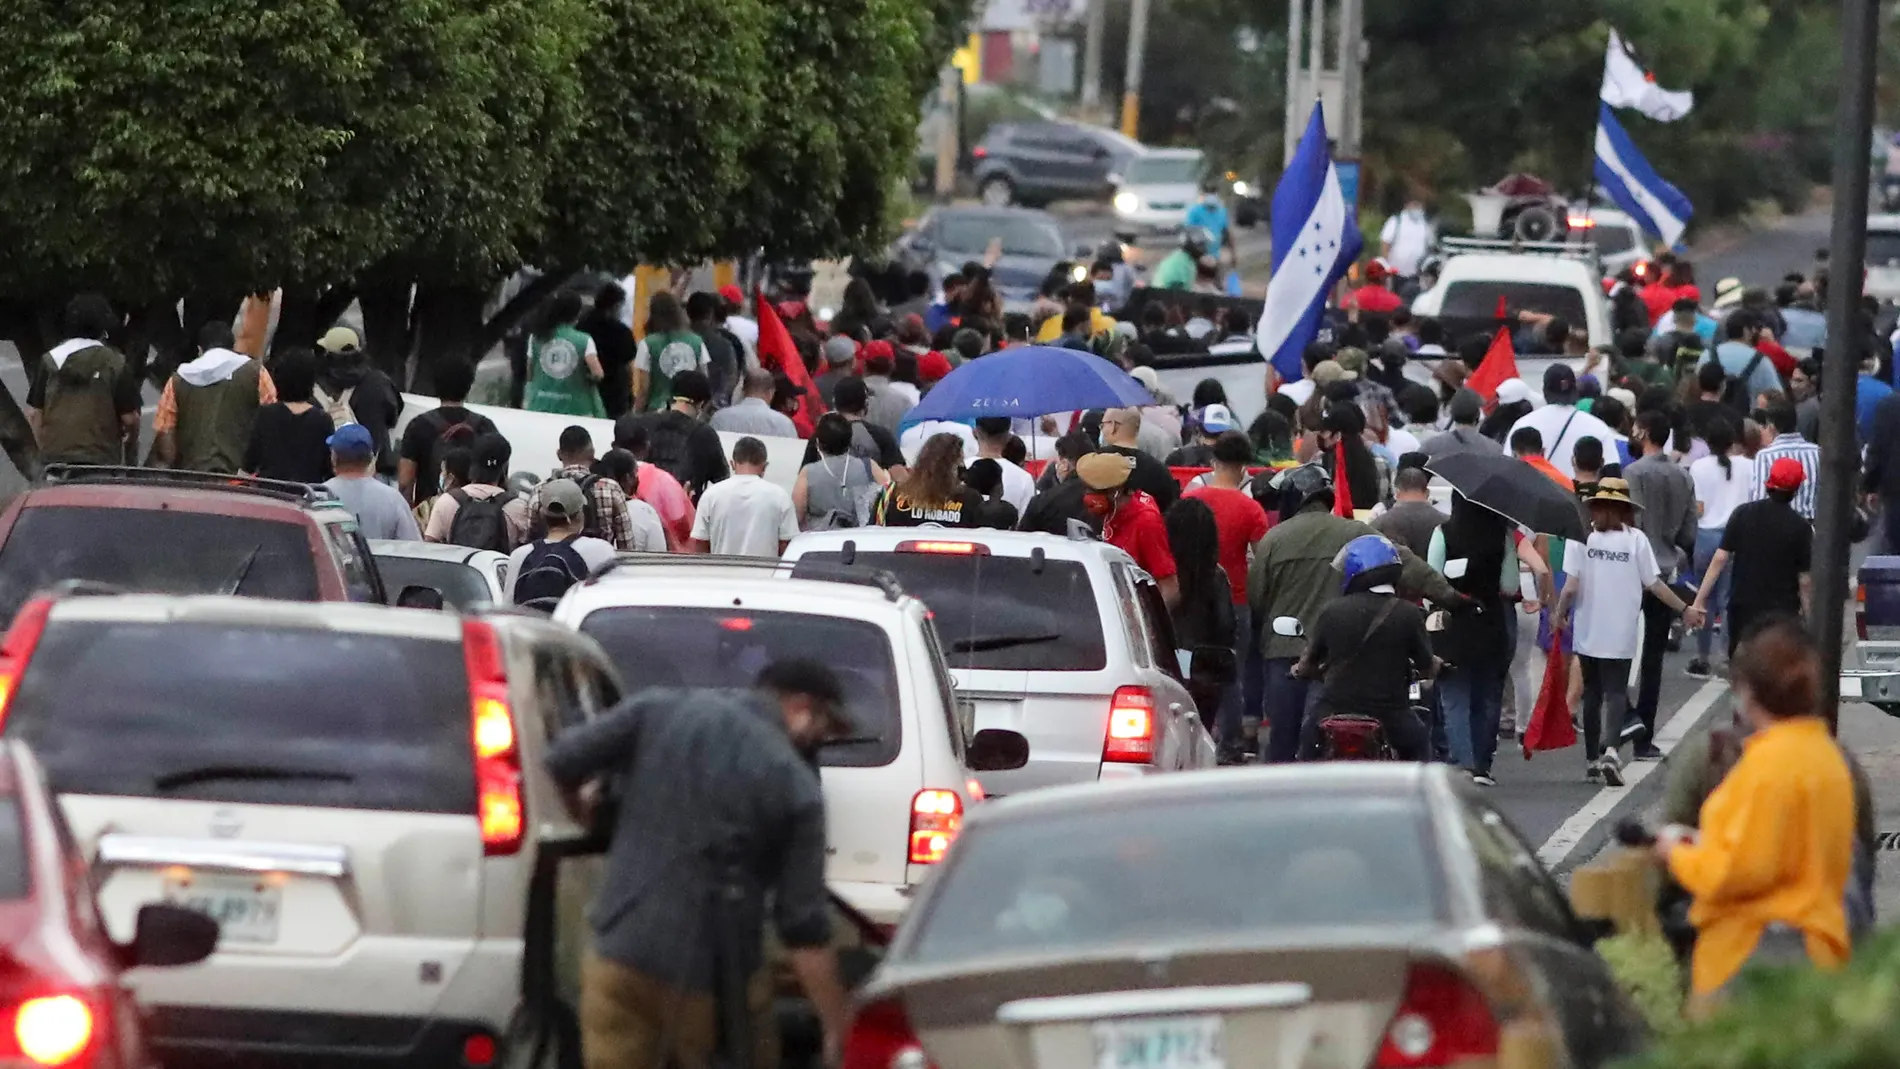 AME8974. TEGUCIGALPA (HONDURAS), 28/06/2021.- Grupos de personas participan en una marcha en conmemoración del golpe de estado en Honduras en el año de 2009 hoy, en Tegucgalpa (Honduras). El partido Libertad y Refundación (Libre, izquierda) conmemoró este martes el 12 aniversario del golpe de Estado del 28 de junio de 2019 al entonces presidente de Honduras, Manuel Zelaya, con una protesta contra las Zonas de Empleo y Desarrollo (ZEDE) que impulsa el oficialismo. EFE/ Gustavo Amador